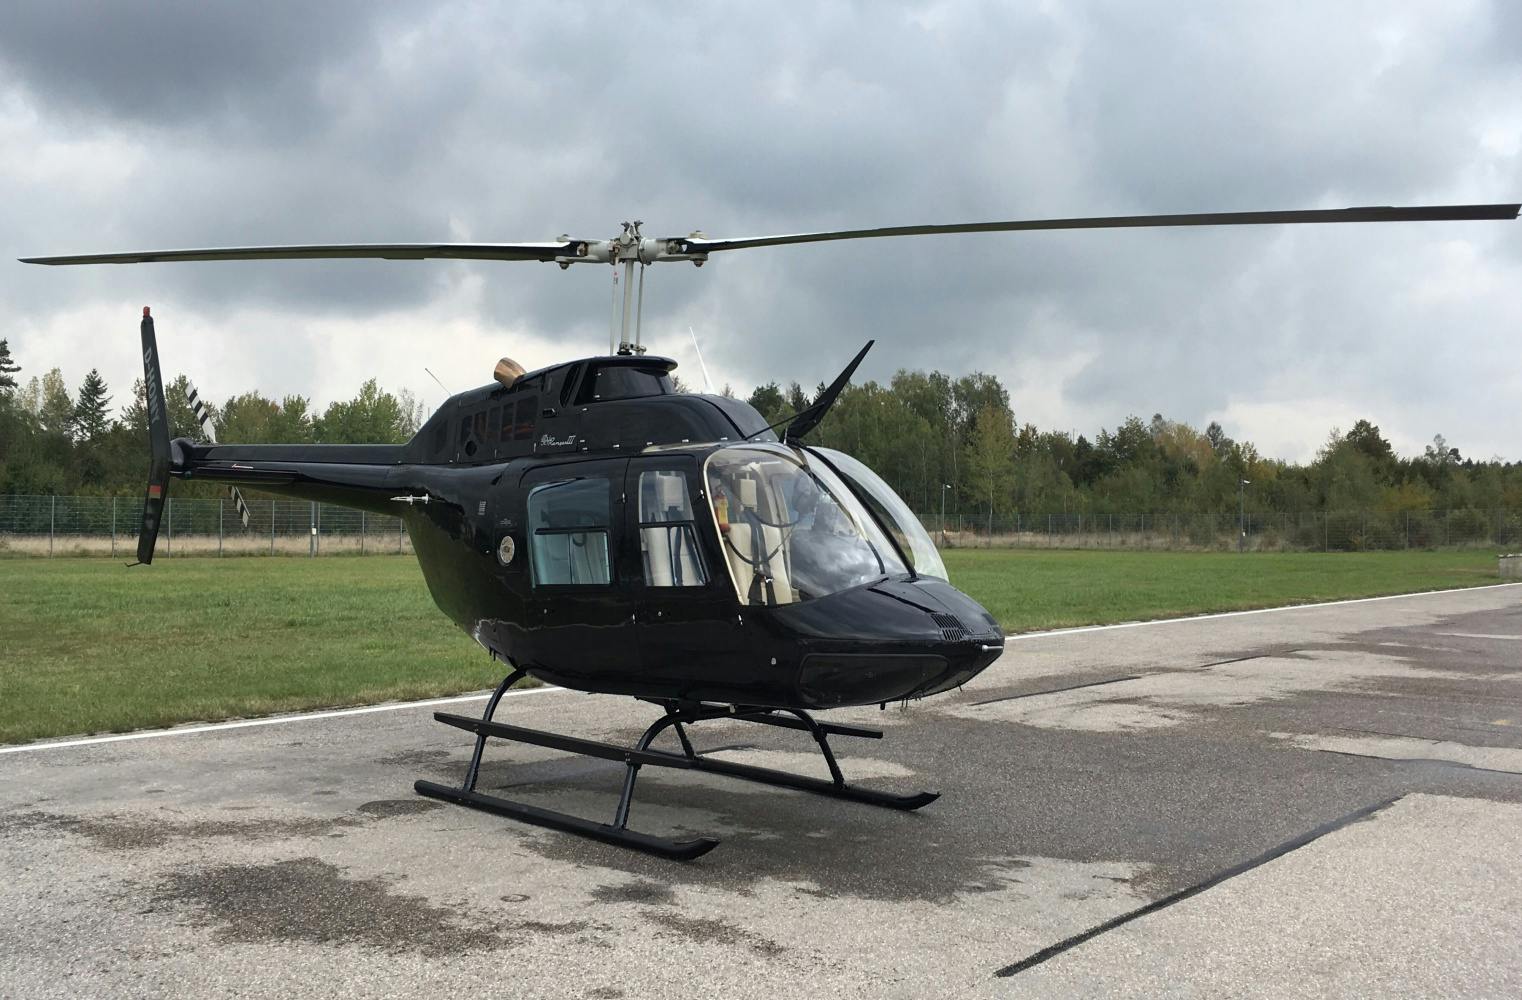 Helikopter-Flight | Donauauen & Legoland von oben | 30 Min.